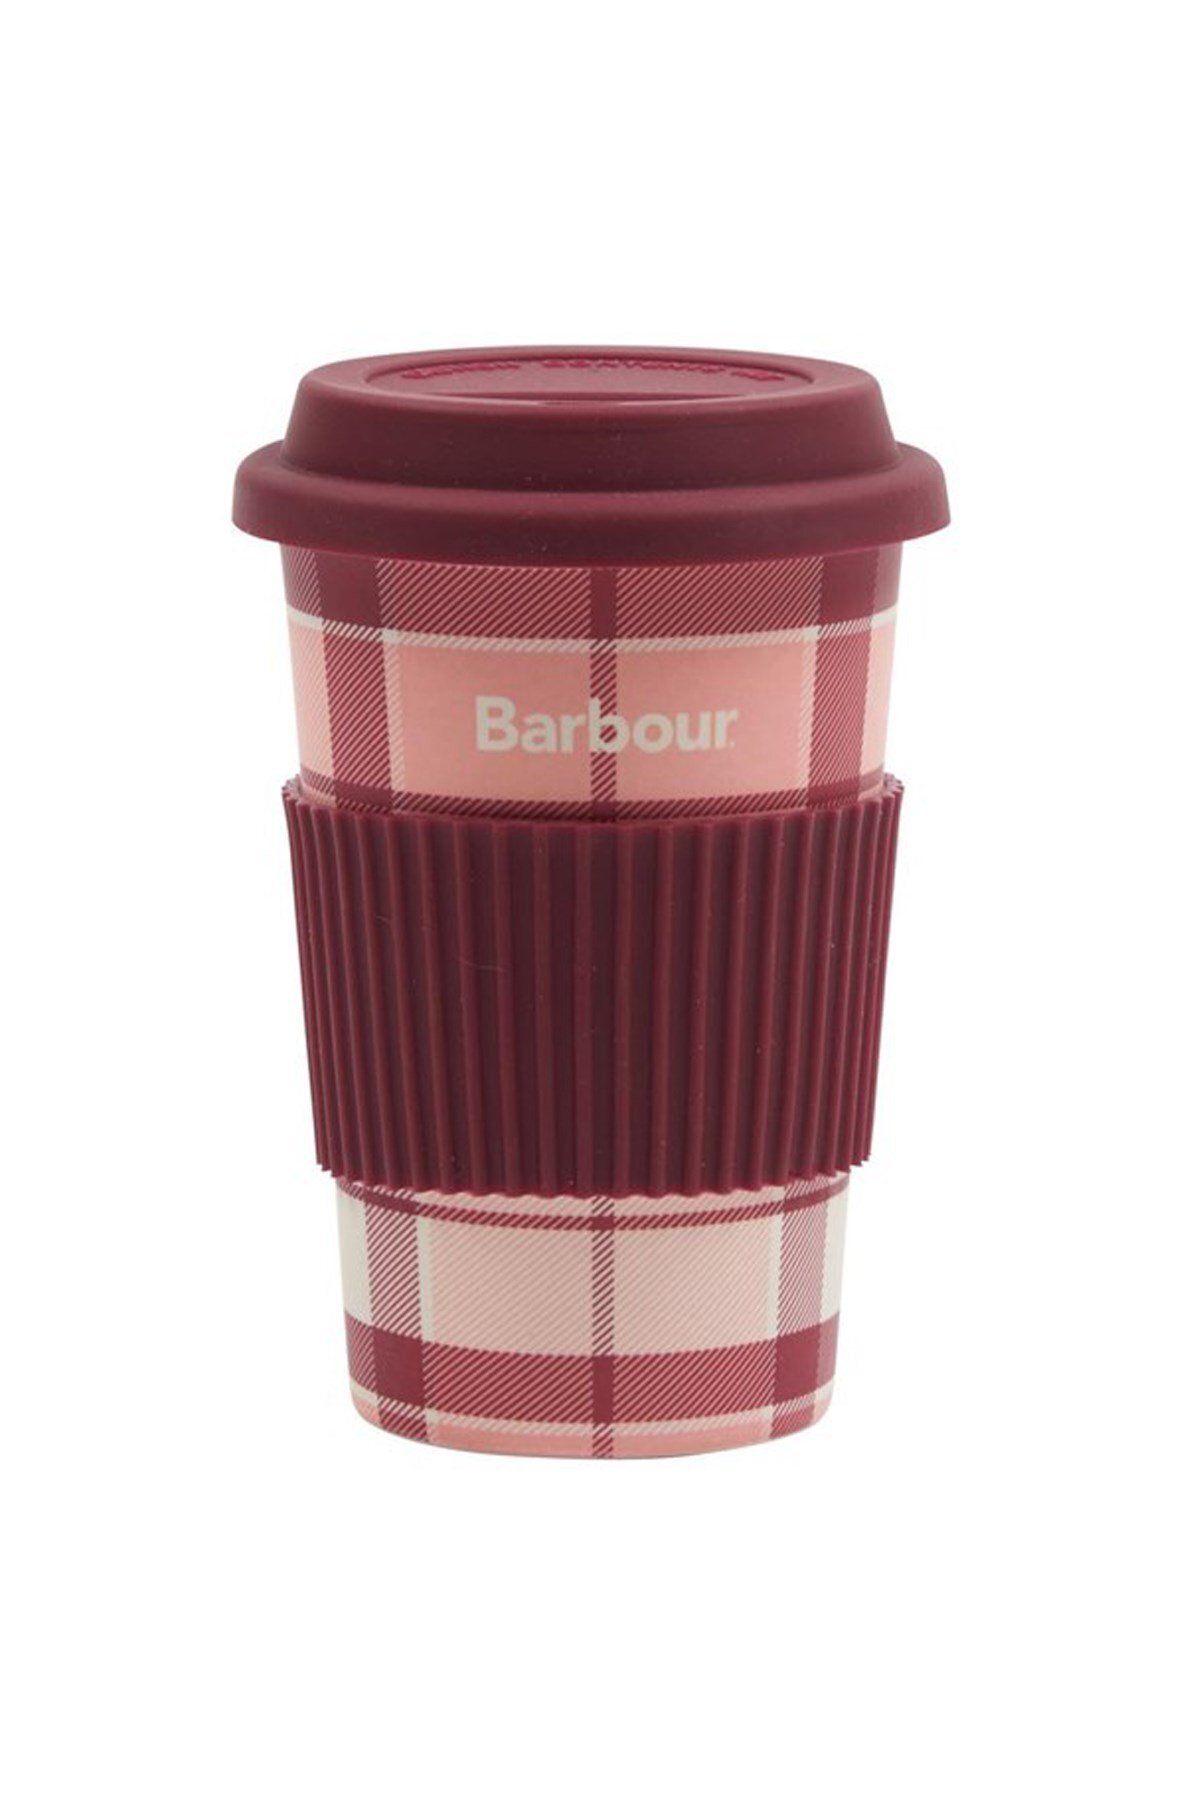 Barbour Tartan Seyahat Kupası Pı51 Pink/red